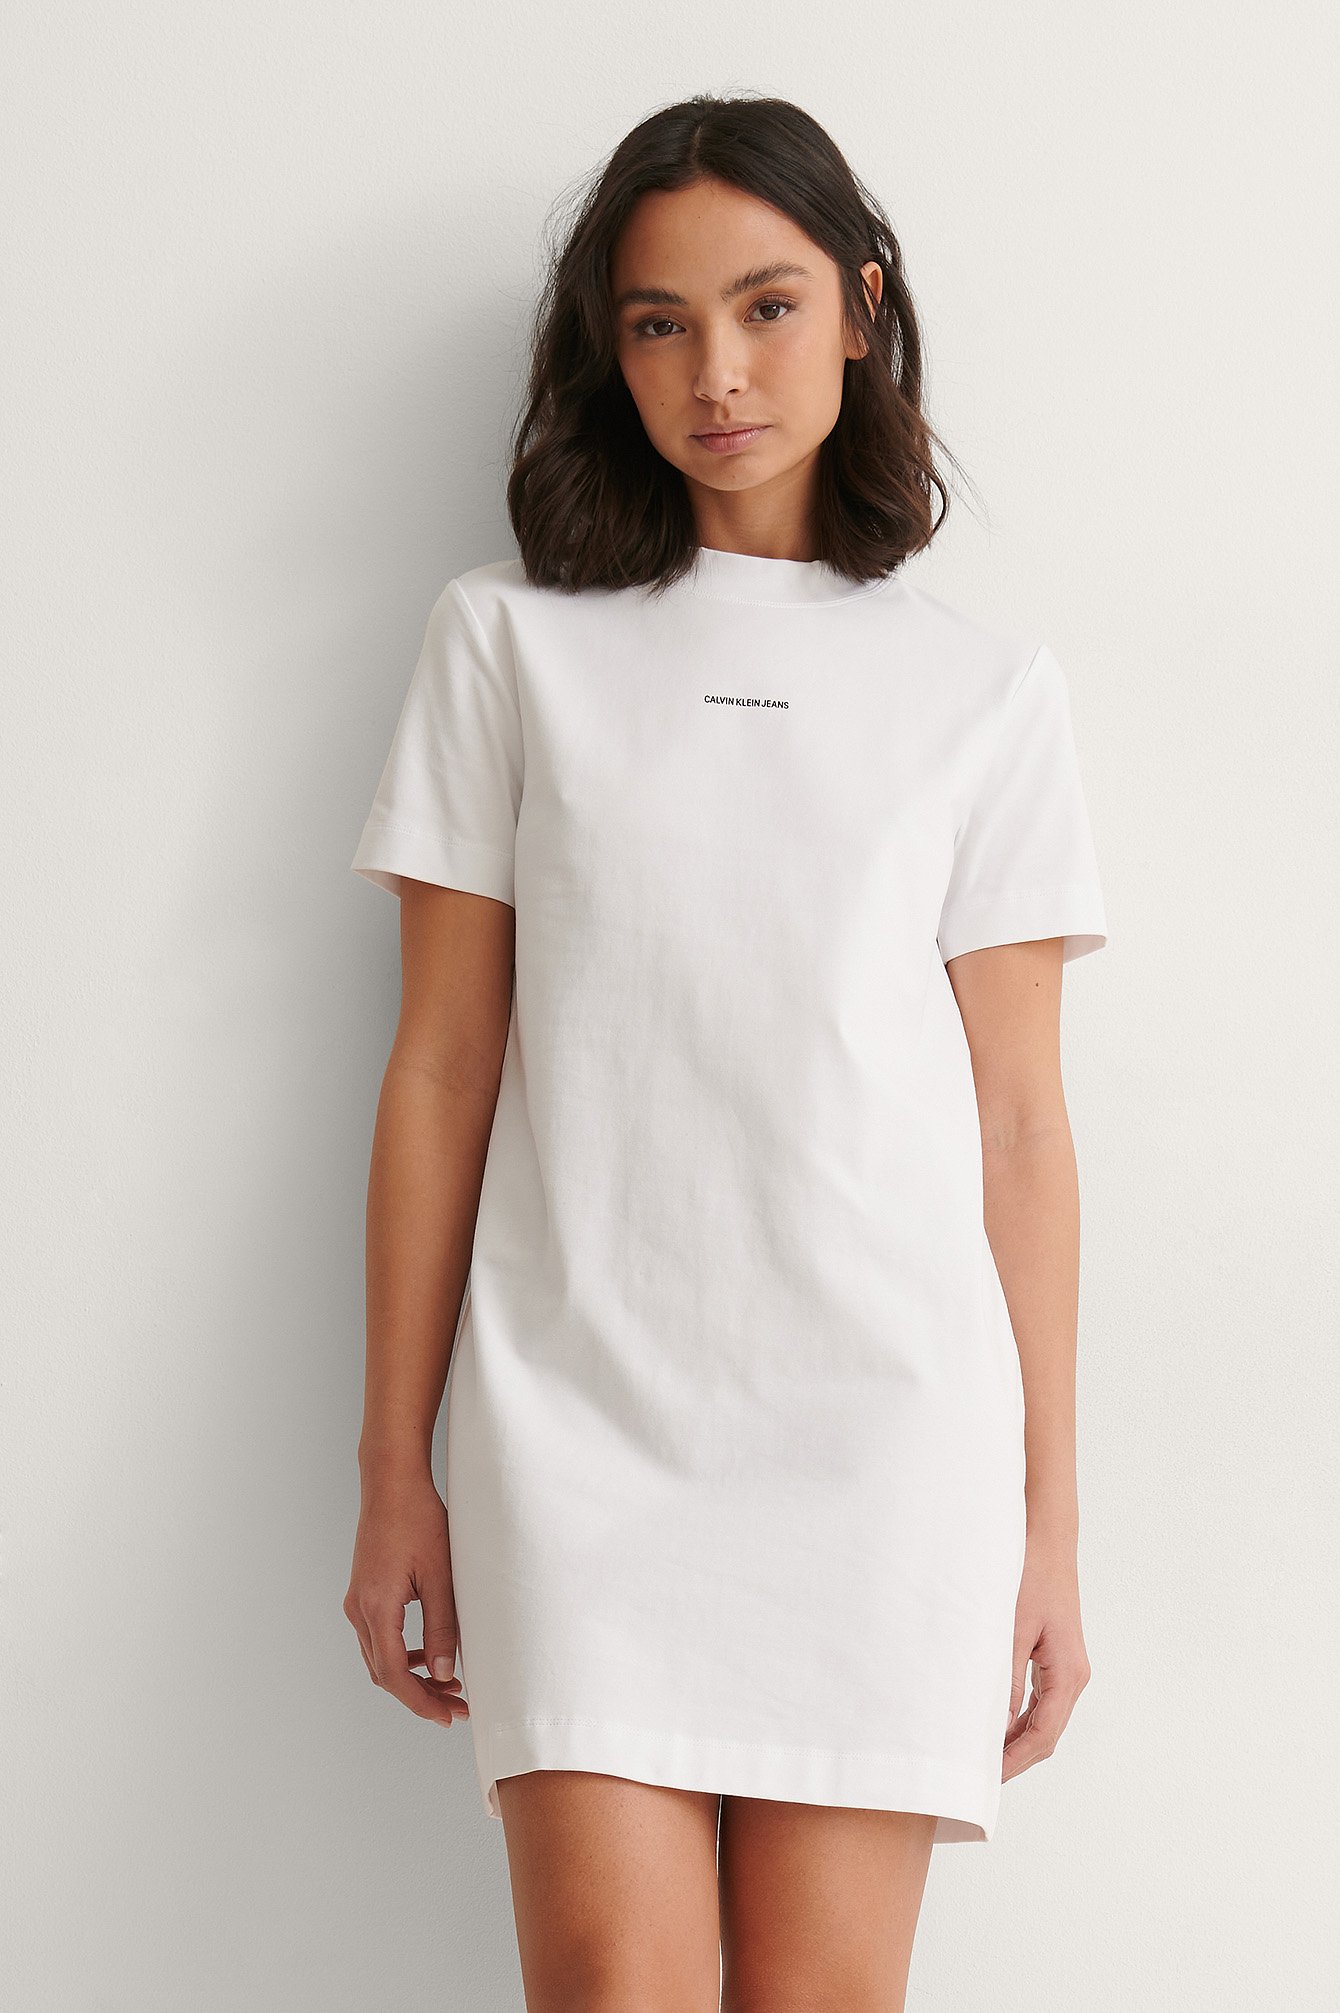 Bright White Micro Branding T-Shirt Dress